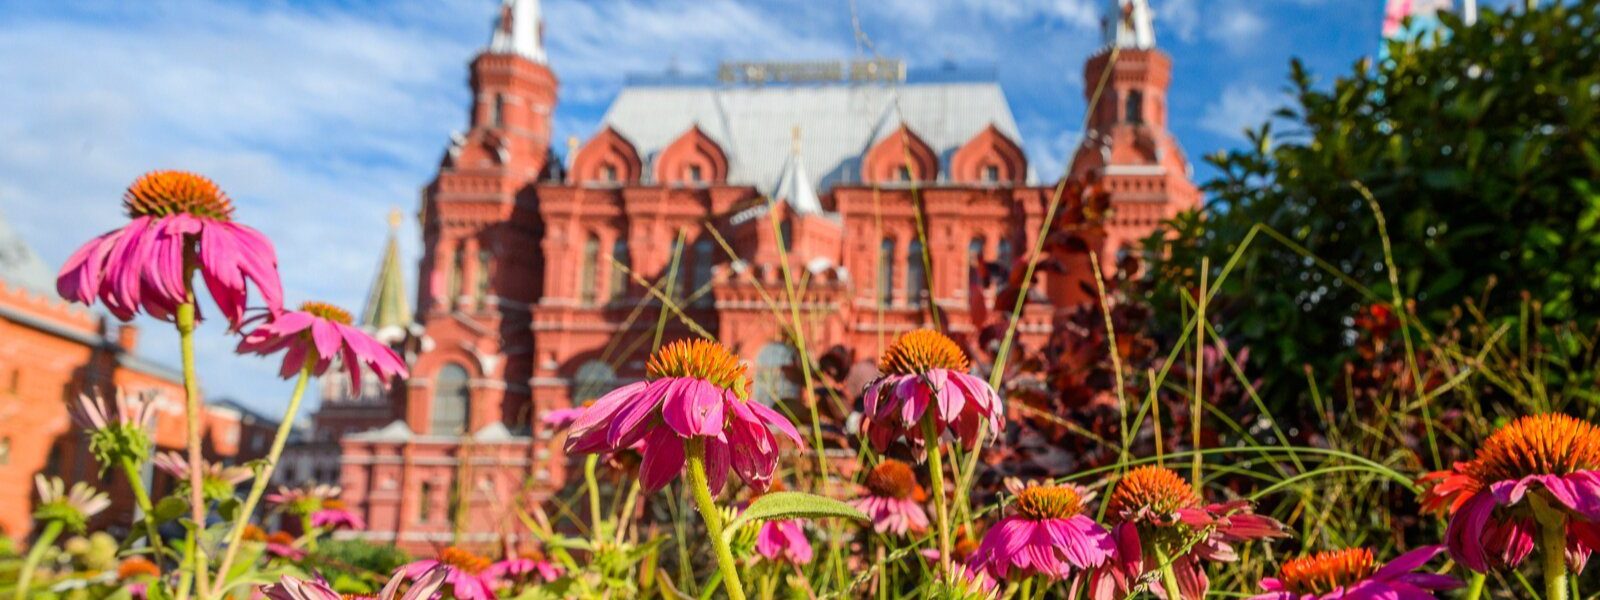 В рамках фестиваля на улицах Москвы обустроят живописные арт-объекты, водные сады, тематические зоны. Фото: сайт мэра Москвы